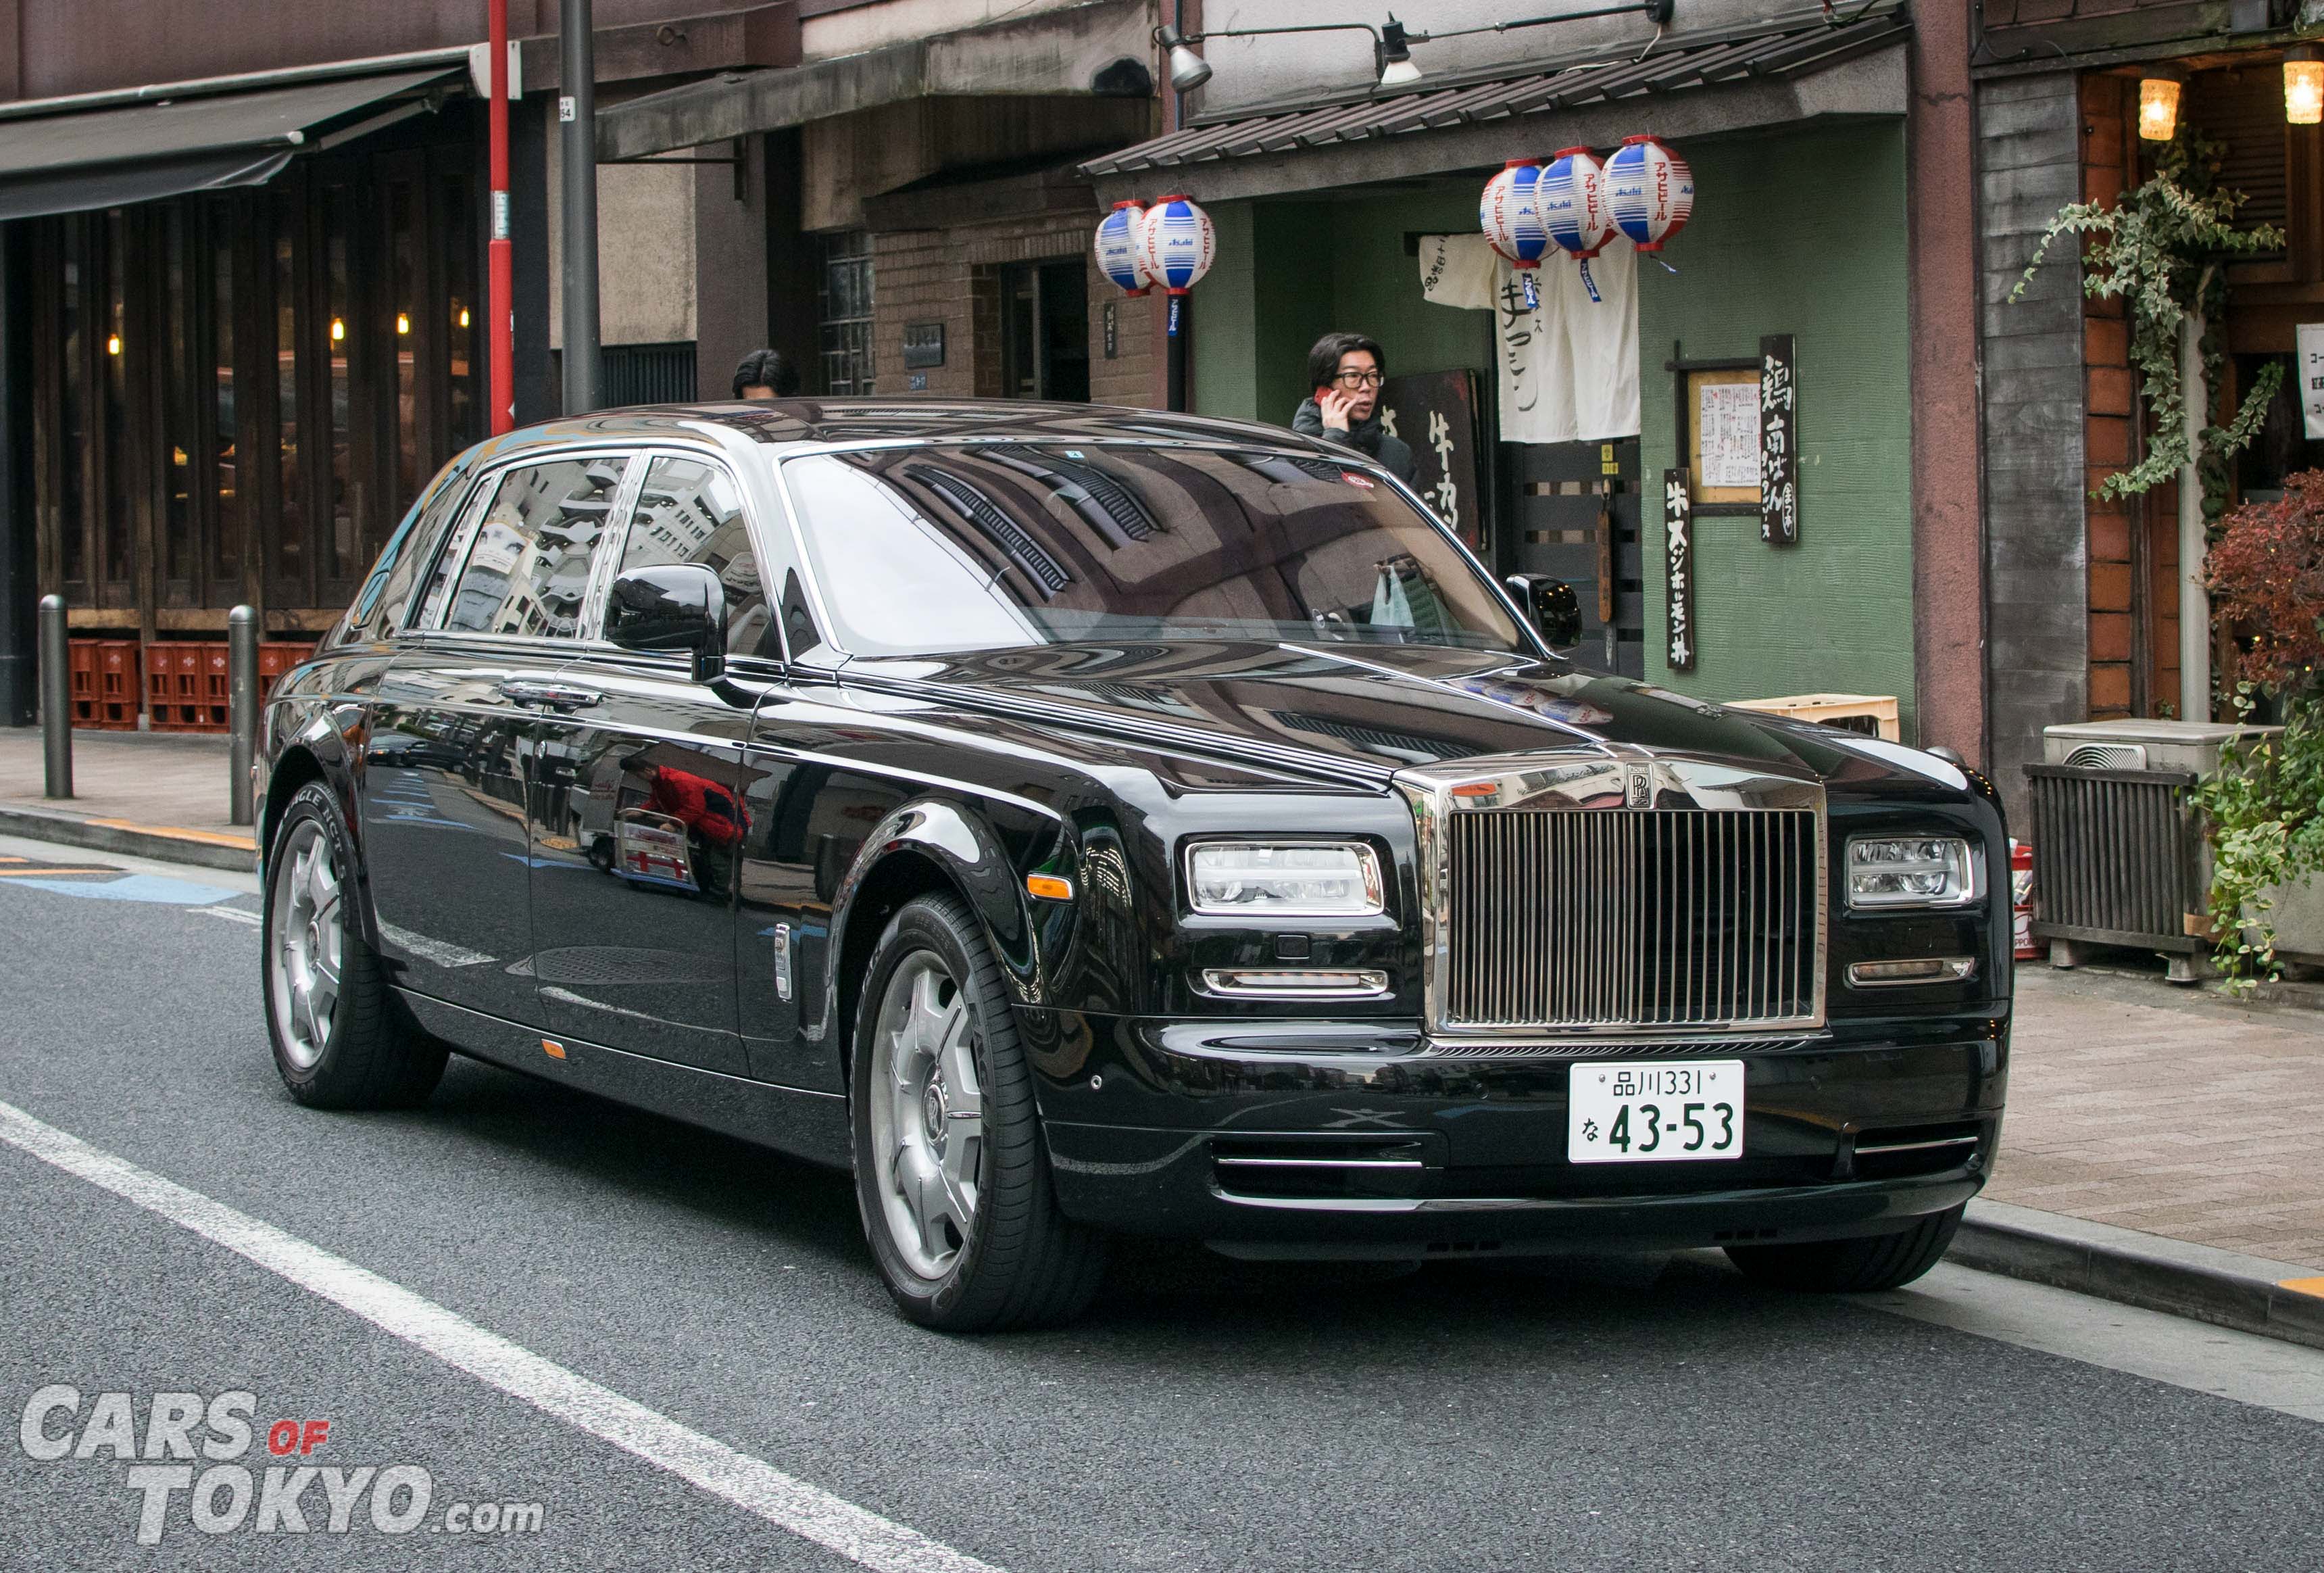 cars-of-tokyo-luxury-rolls-royce-phantom